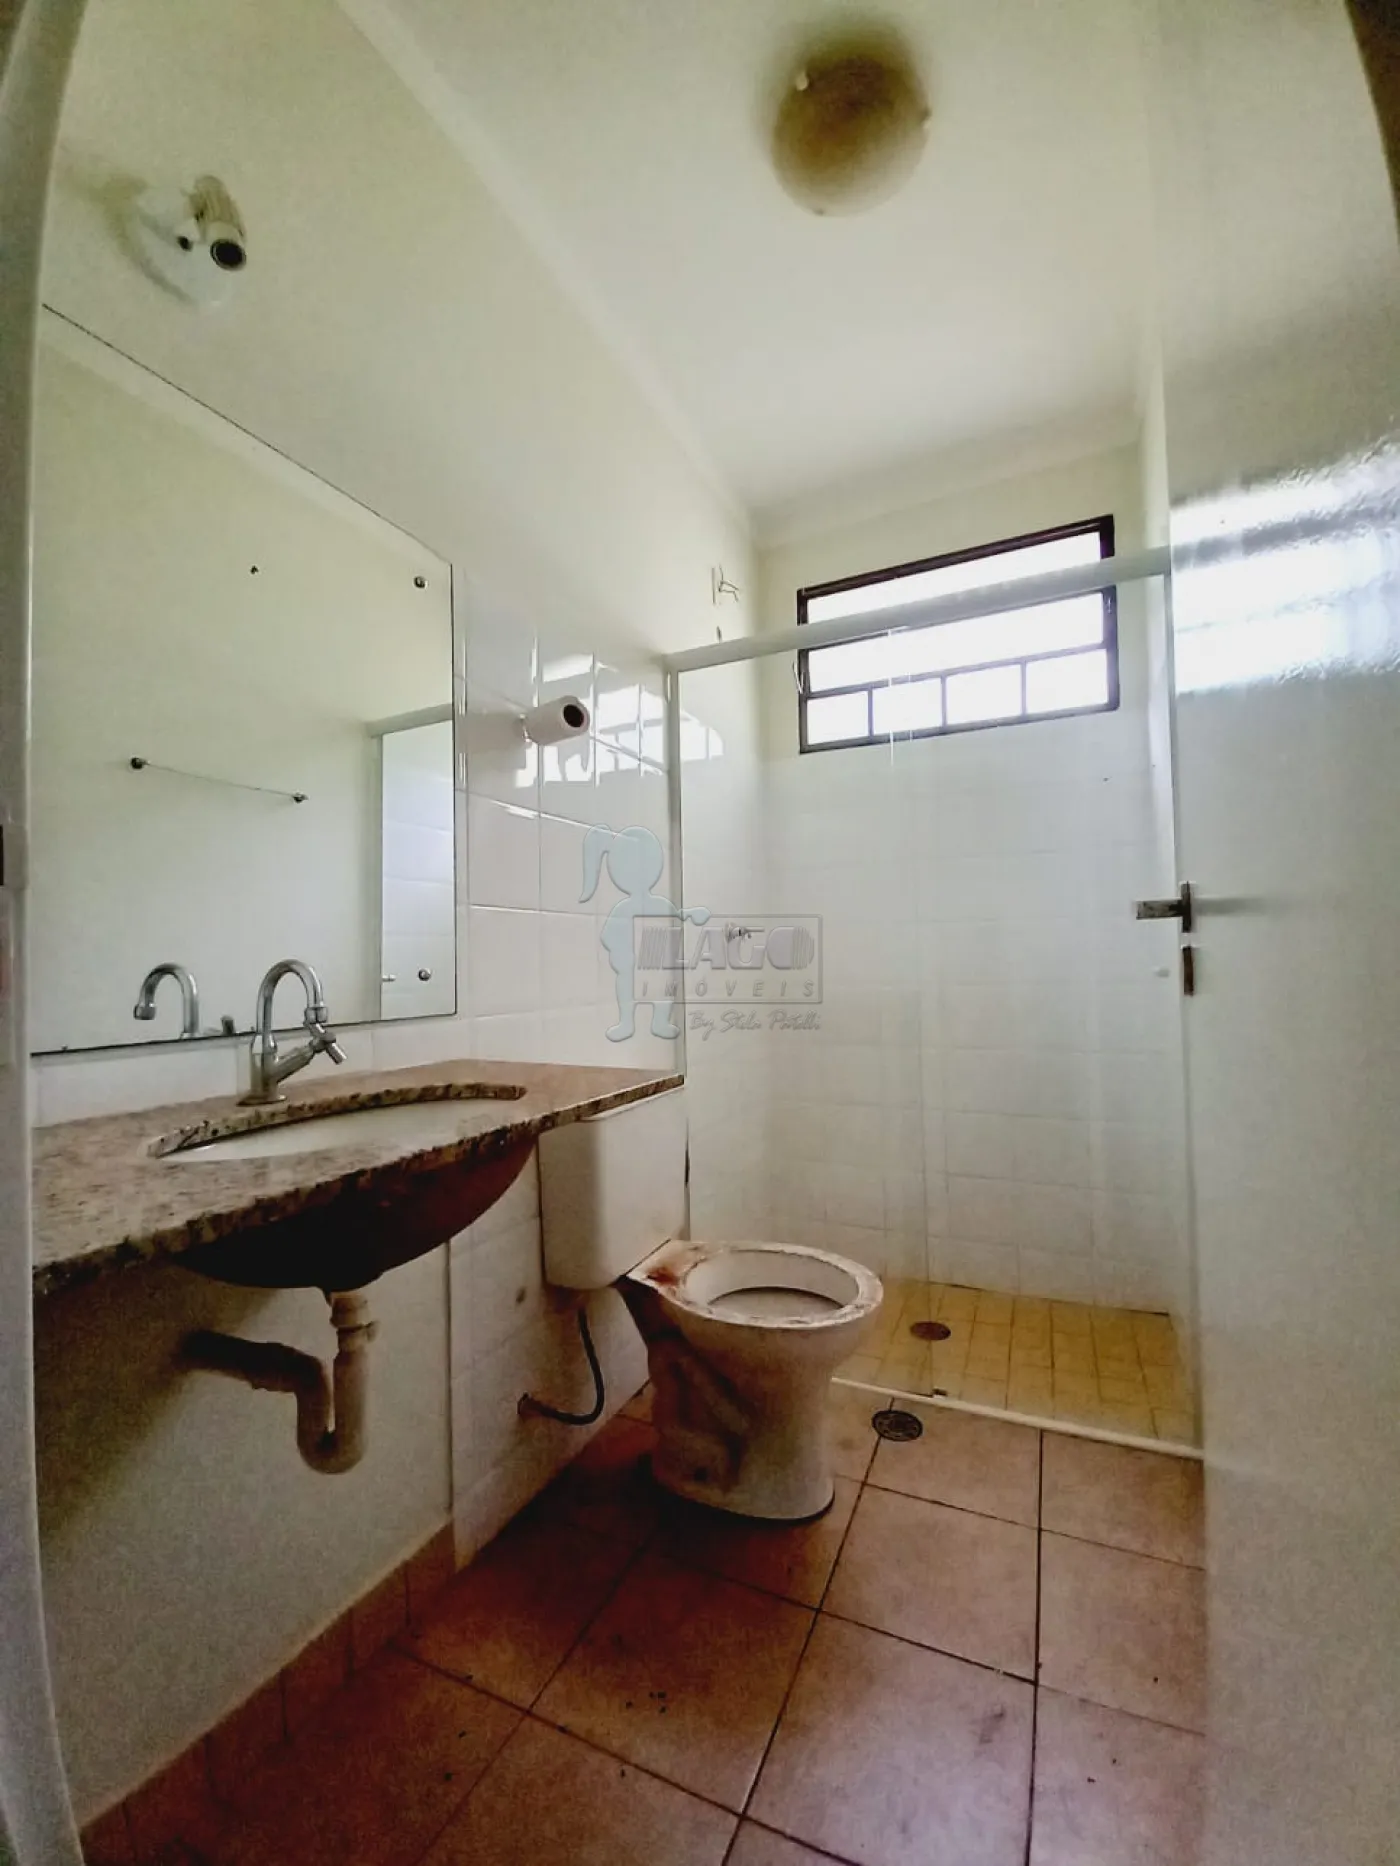 Alugar Casa condomínio / Padrão em Ribeirão Preto R$ 1.650,00 - Foto 5